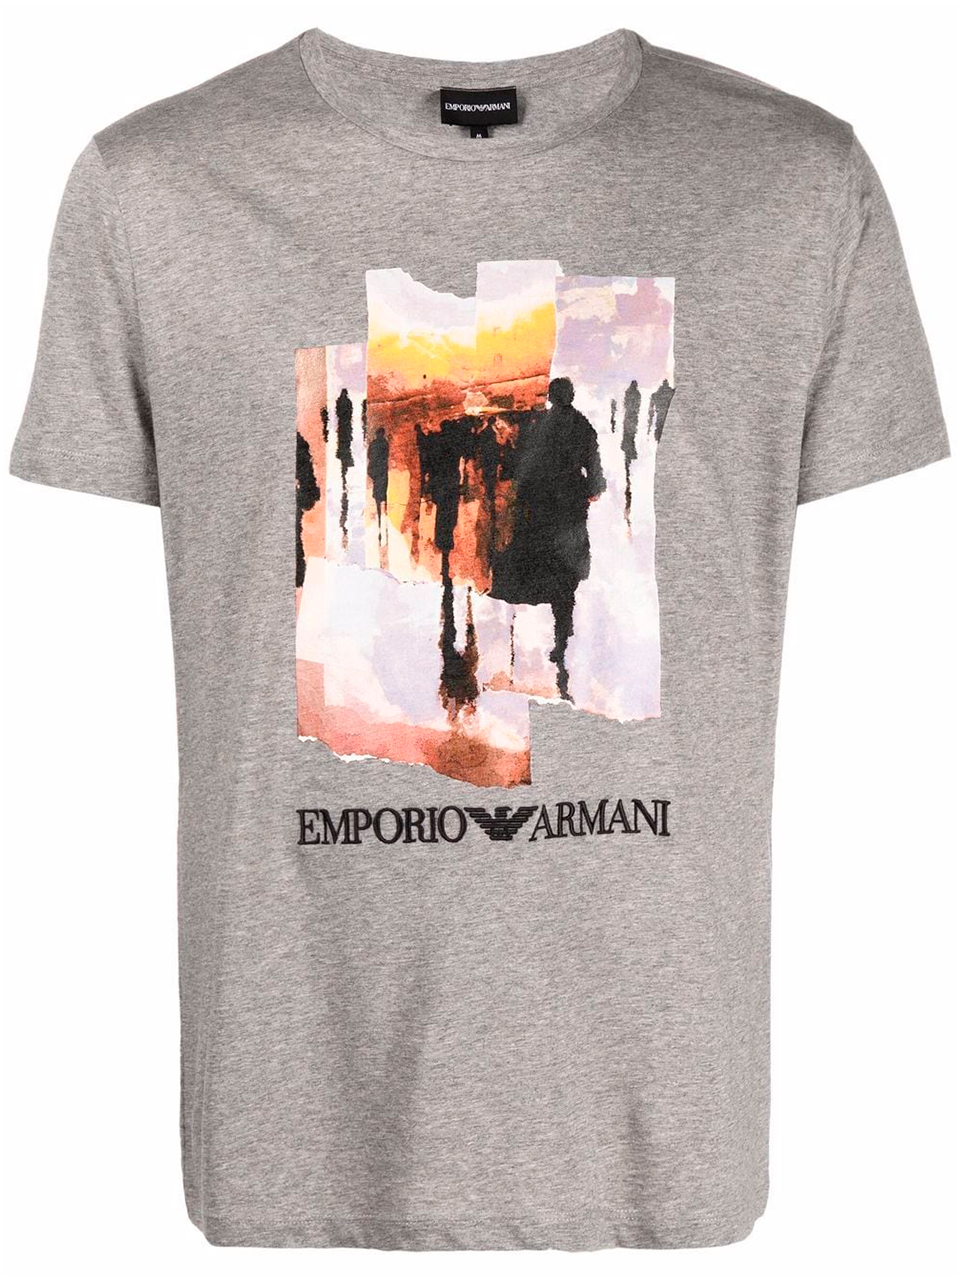 Imagem de: Camiseta Emporio Armani Cinza com Estampa